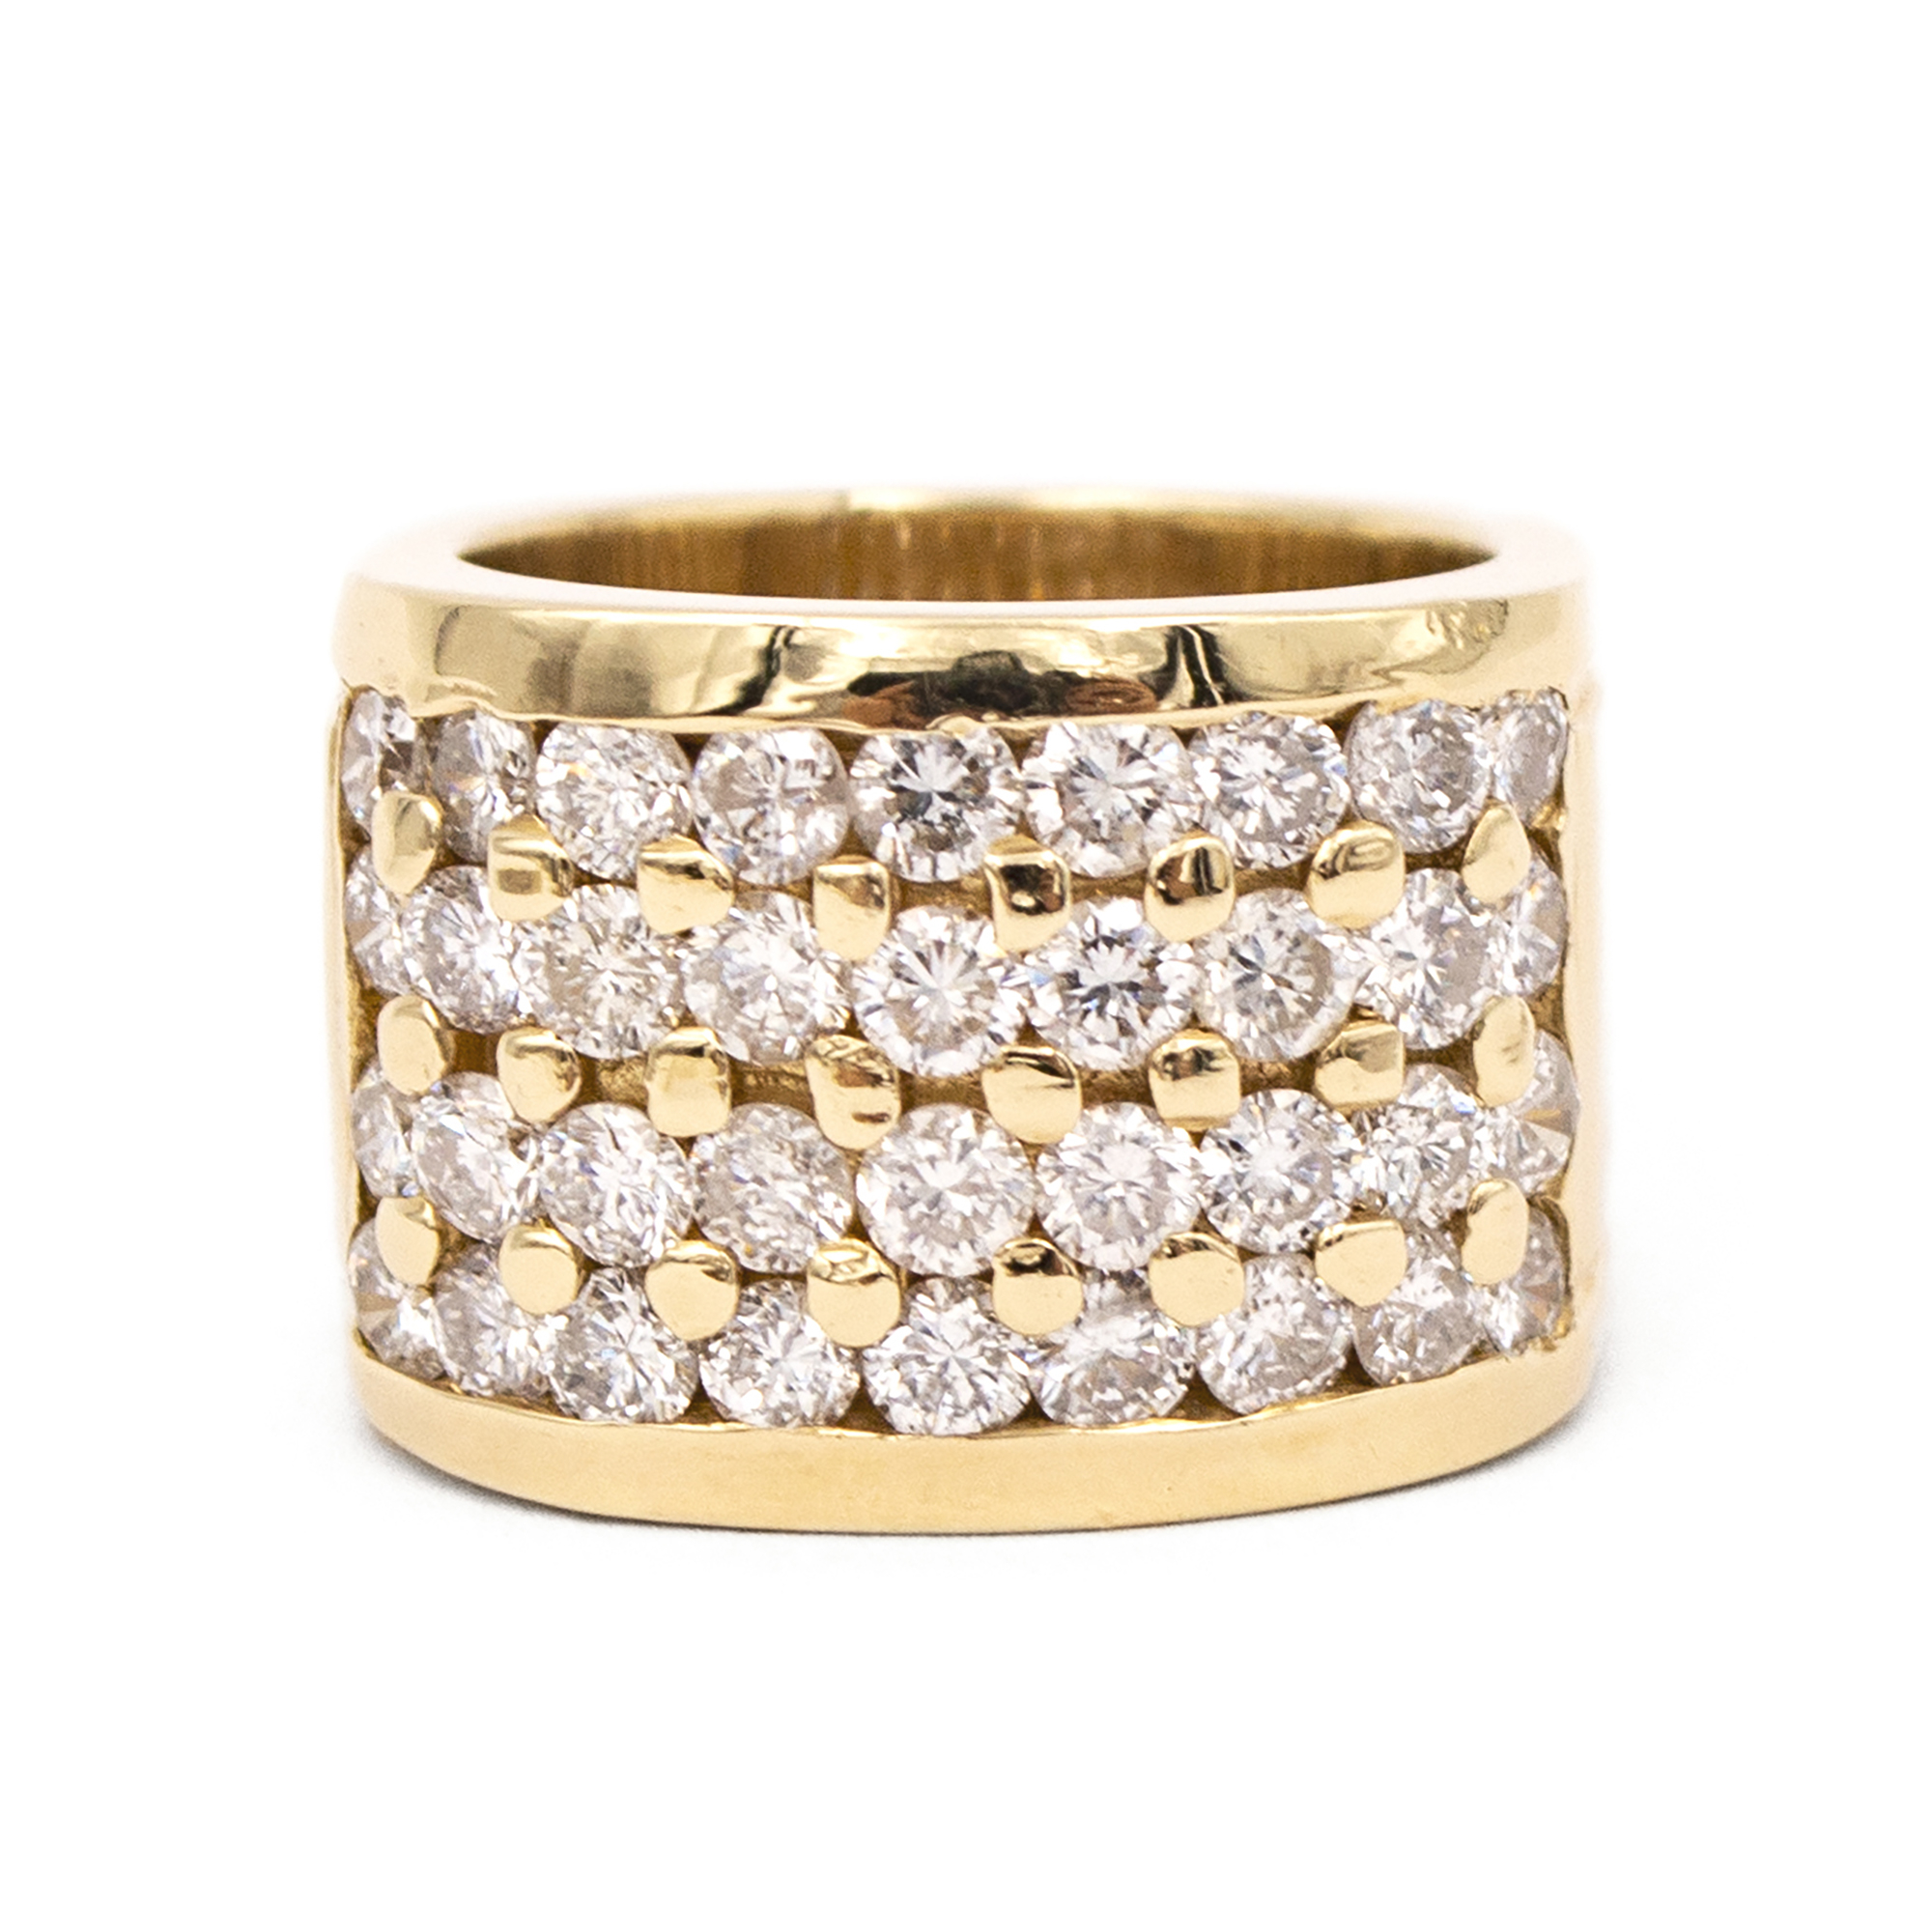 Vintage Diamond Fashion Ring | Sandler's Diamonds & Time | Columbia SC ...